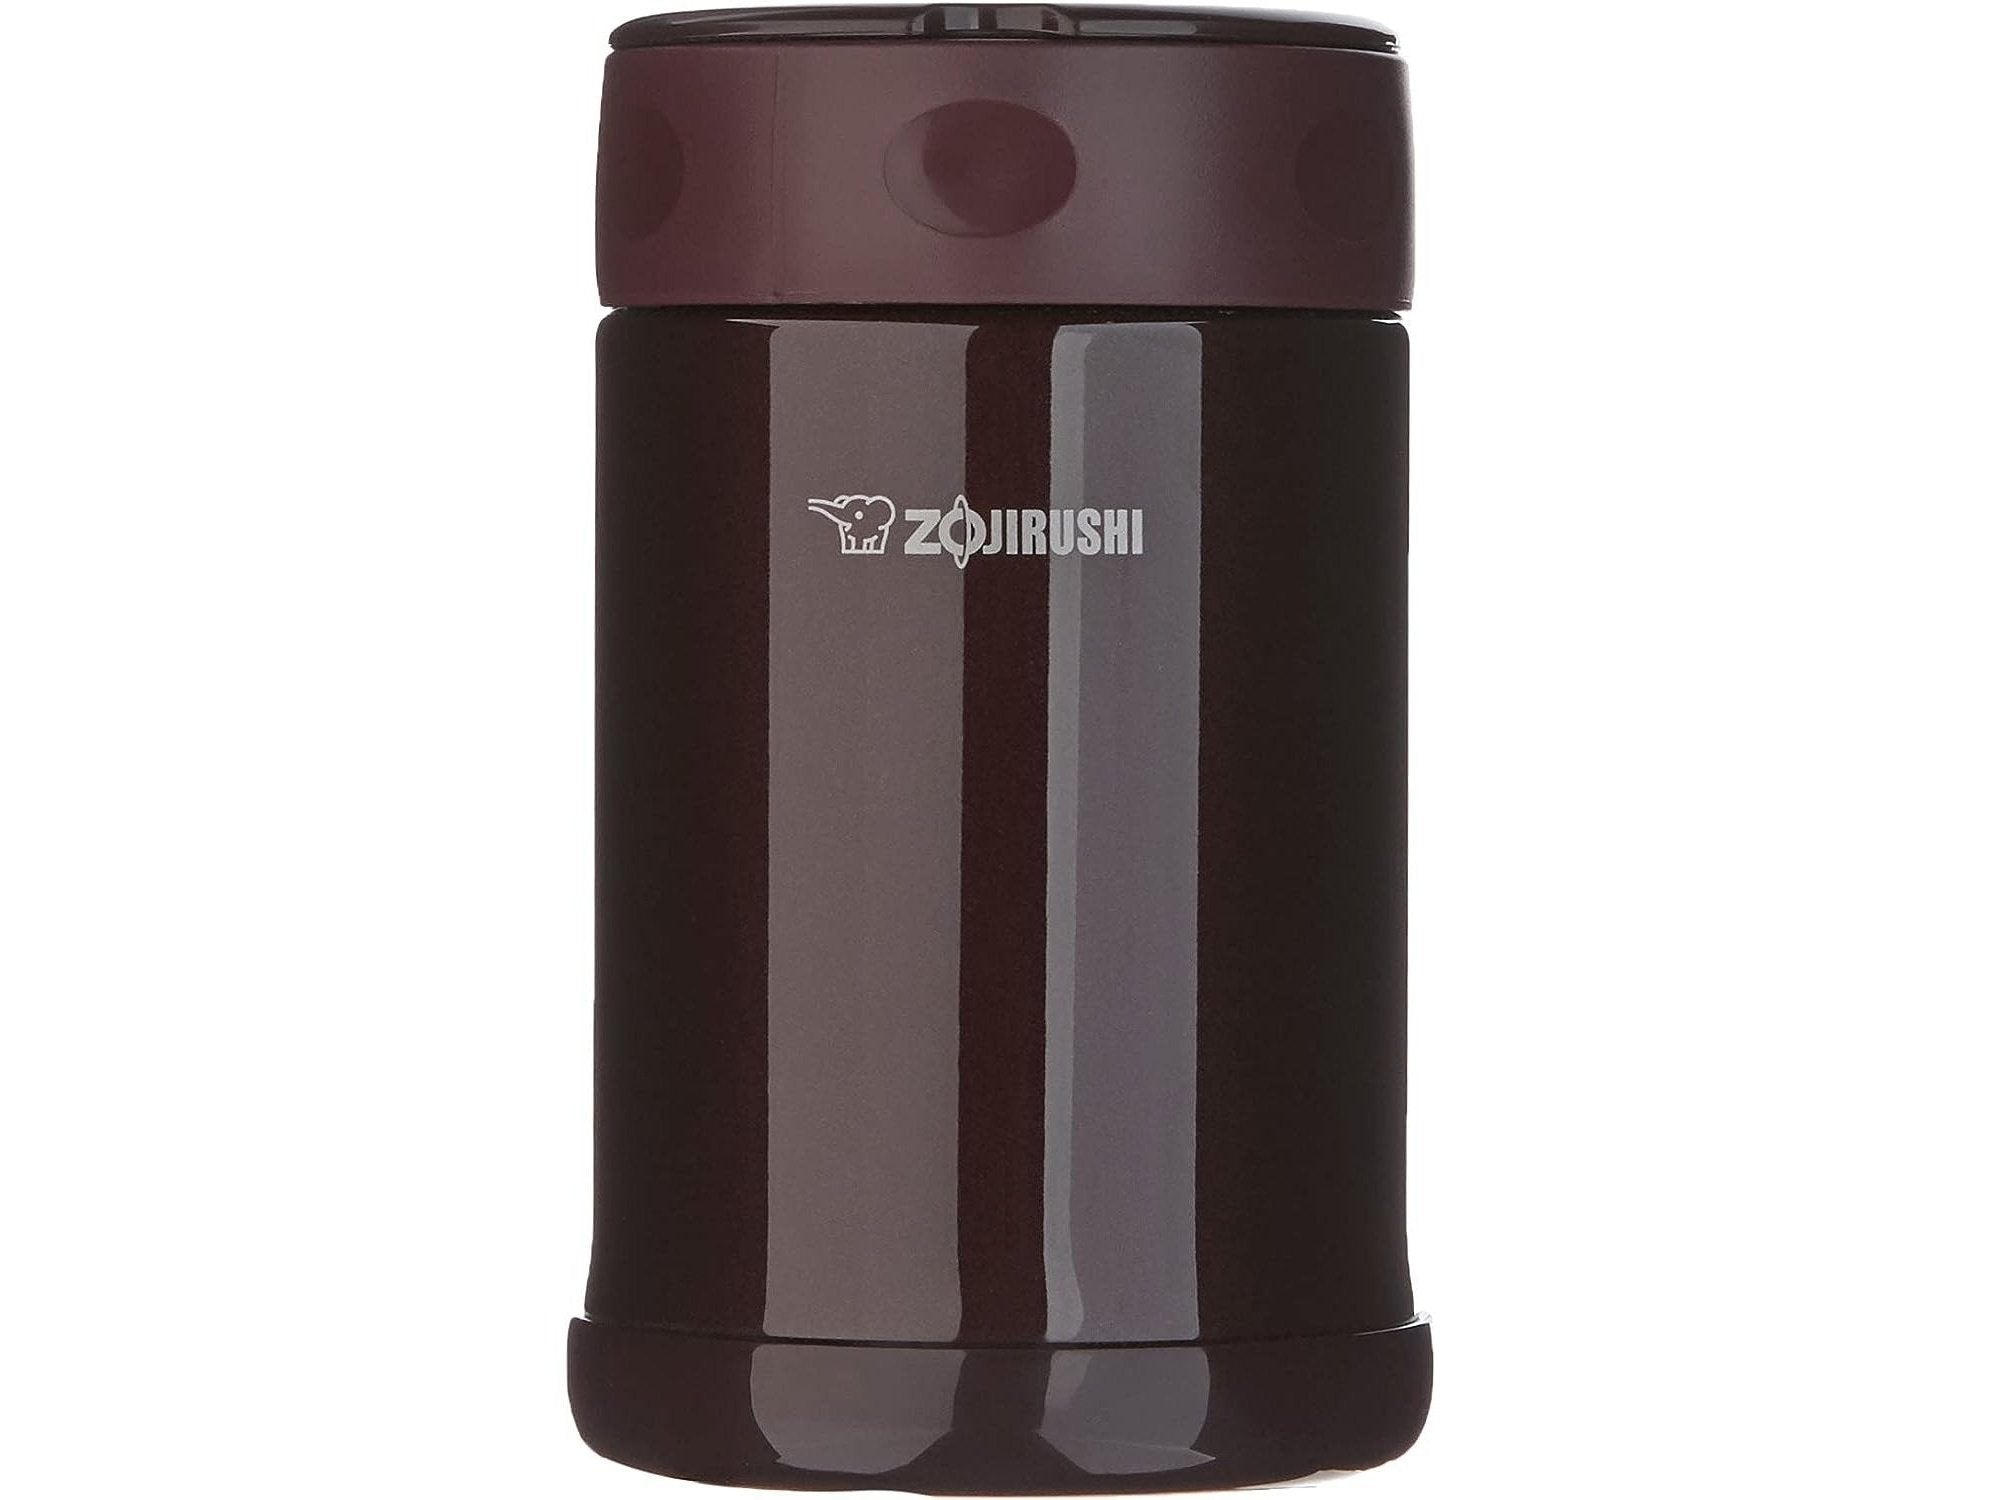 Zojirushi Stainless Steel Food Jar 16.9-Ounce / 500 ml Dark Brown